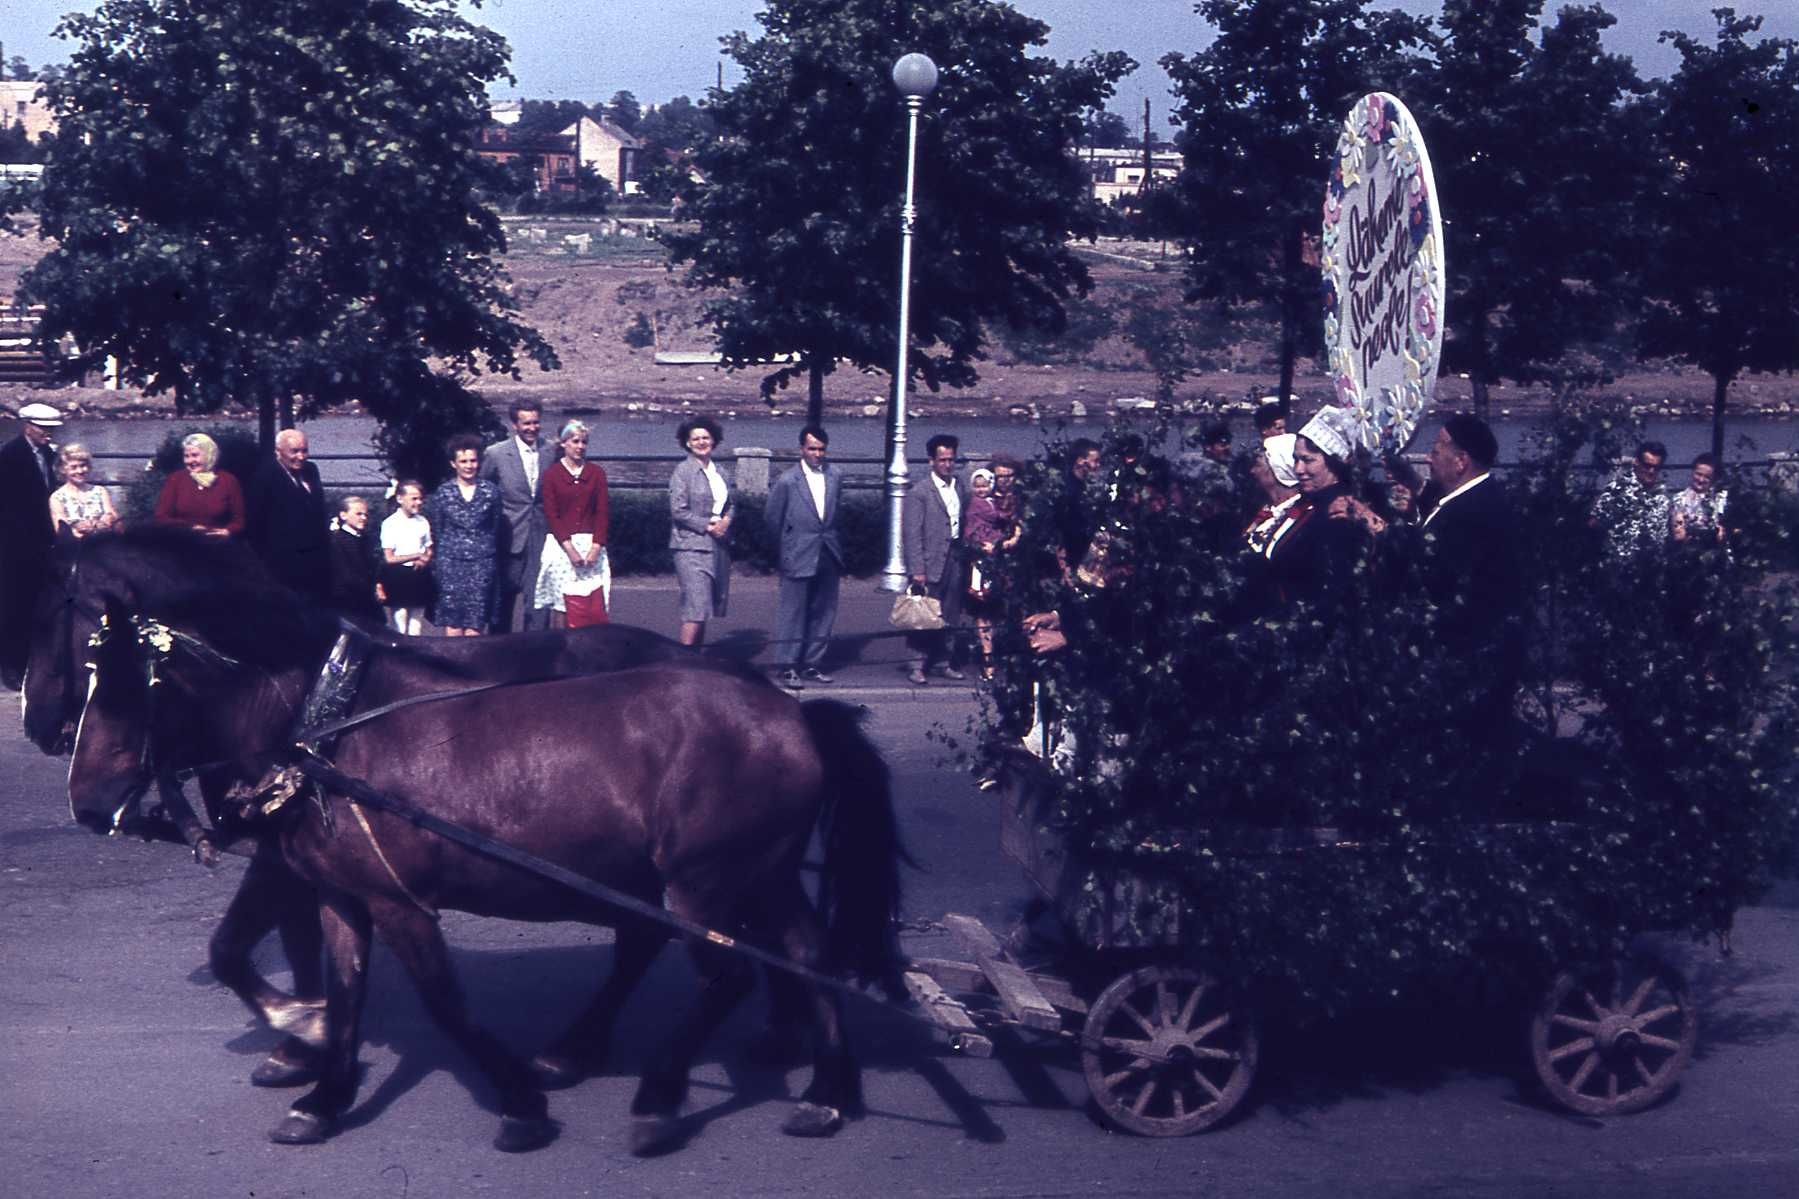 Ants Nilsoni fotokogu negatiivid.  Tartu linna ja rajooni laulupäev Tähtvere lauluväljakul. Tartu, 1965.